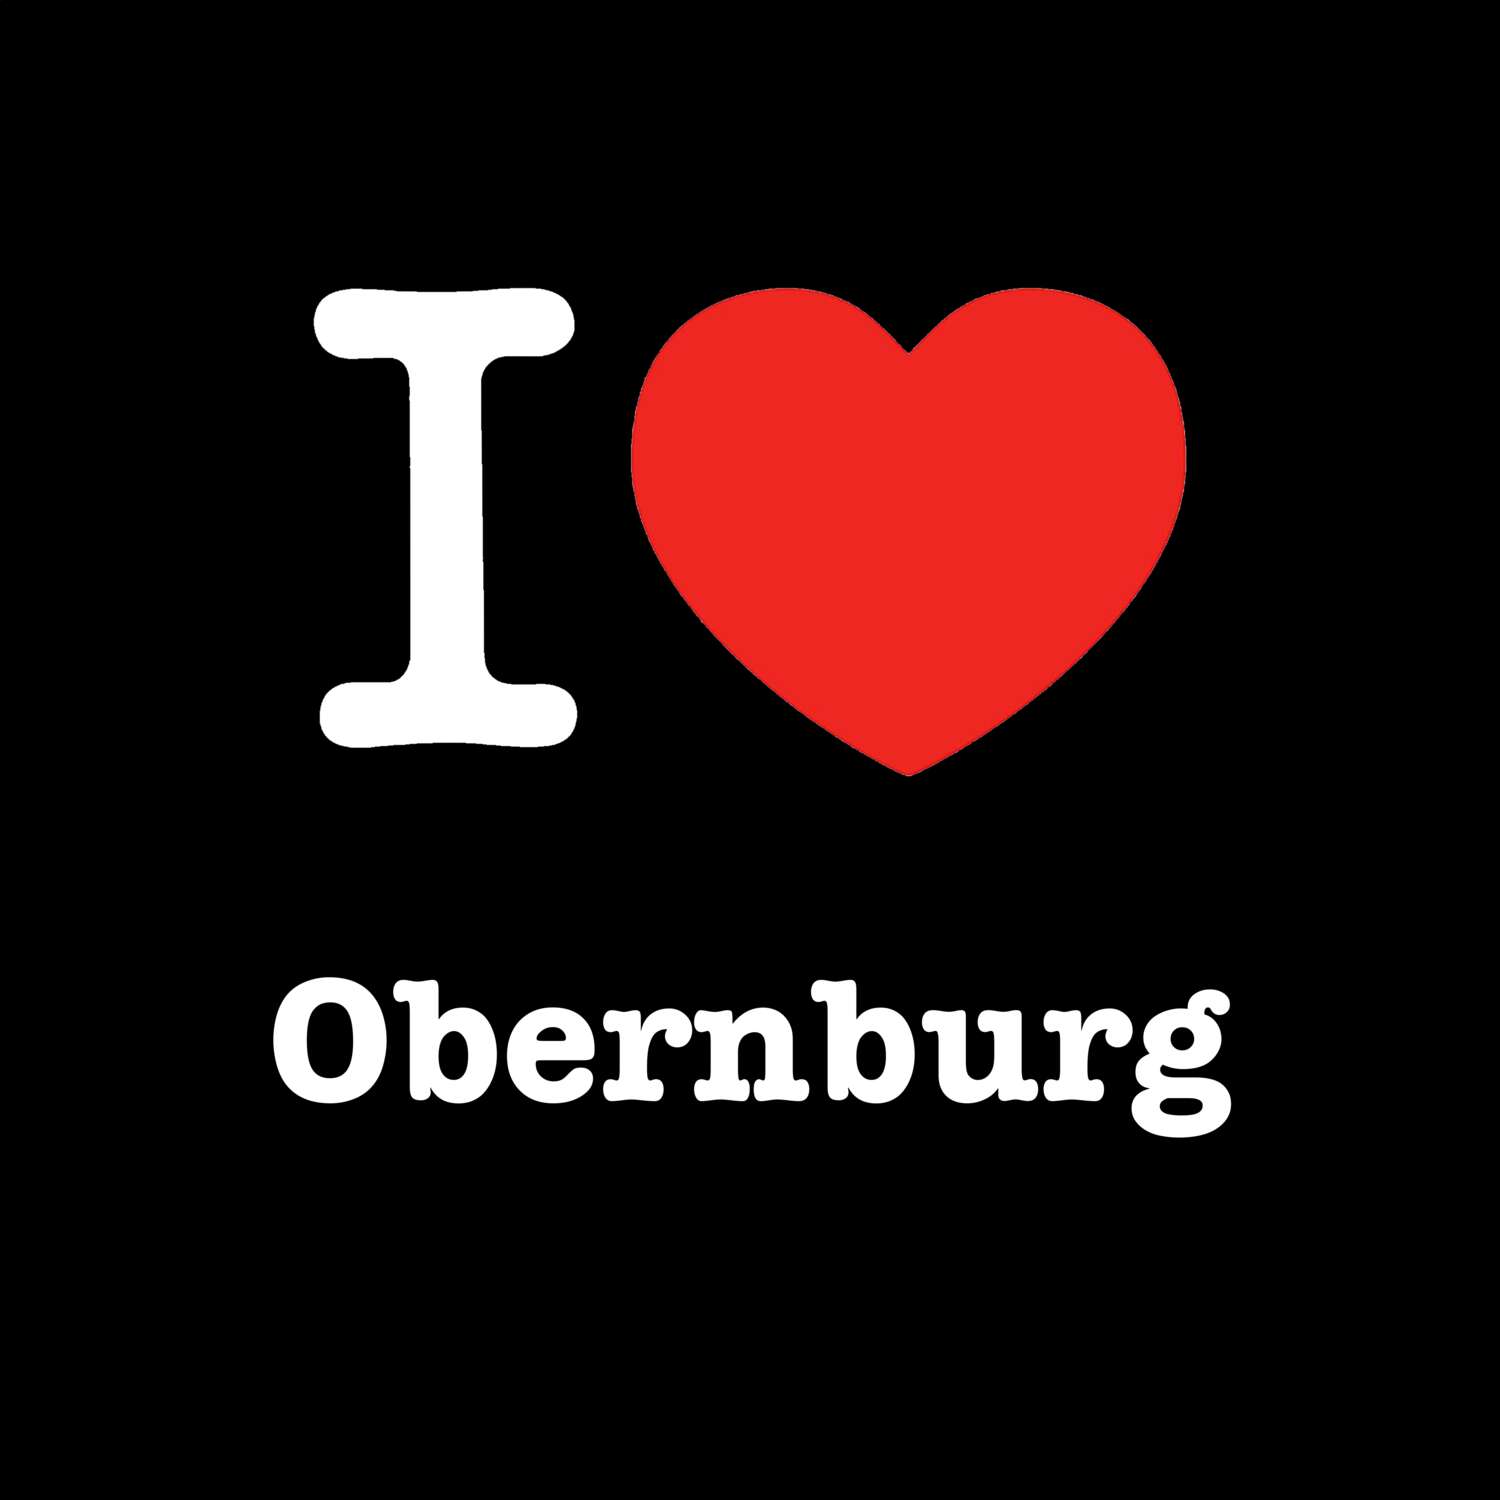 Obernburg T-Shirt »I love«